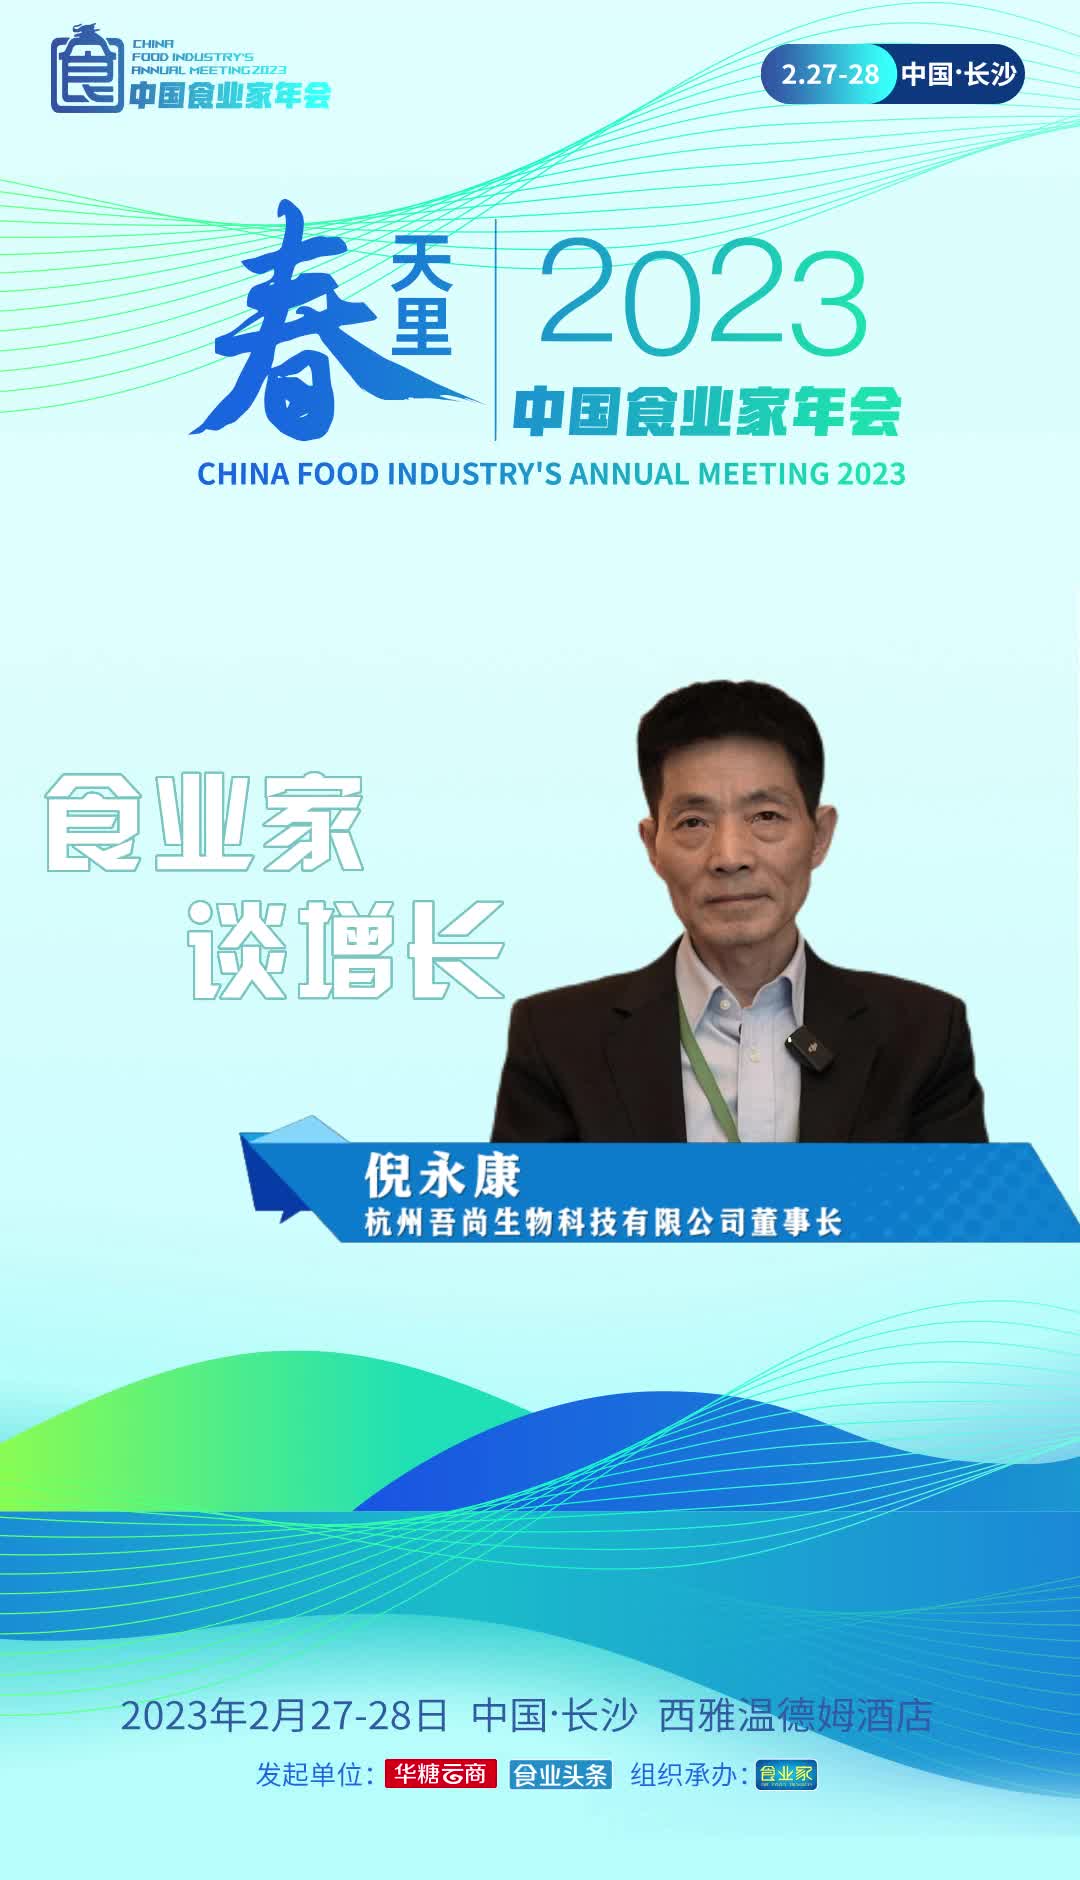 杭州吾尚生物科技有限公司董事长倪永康认为，2023年中国食品行业发展是谨慎与乐观并存，机遇与挑战并存